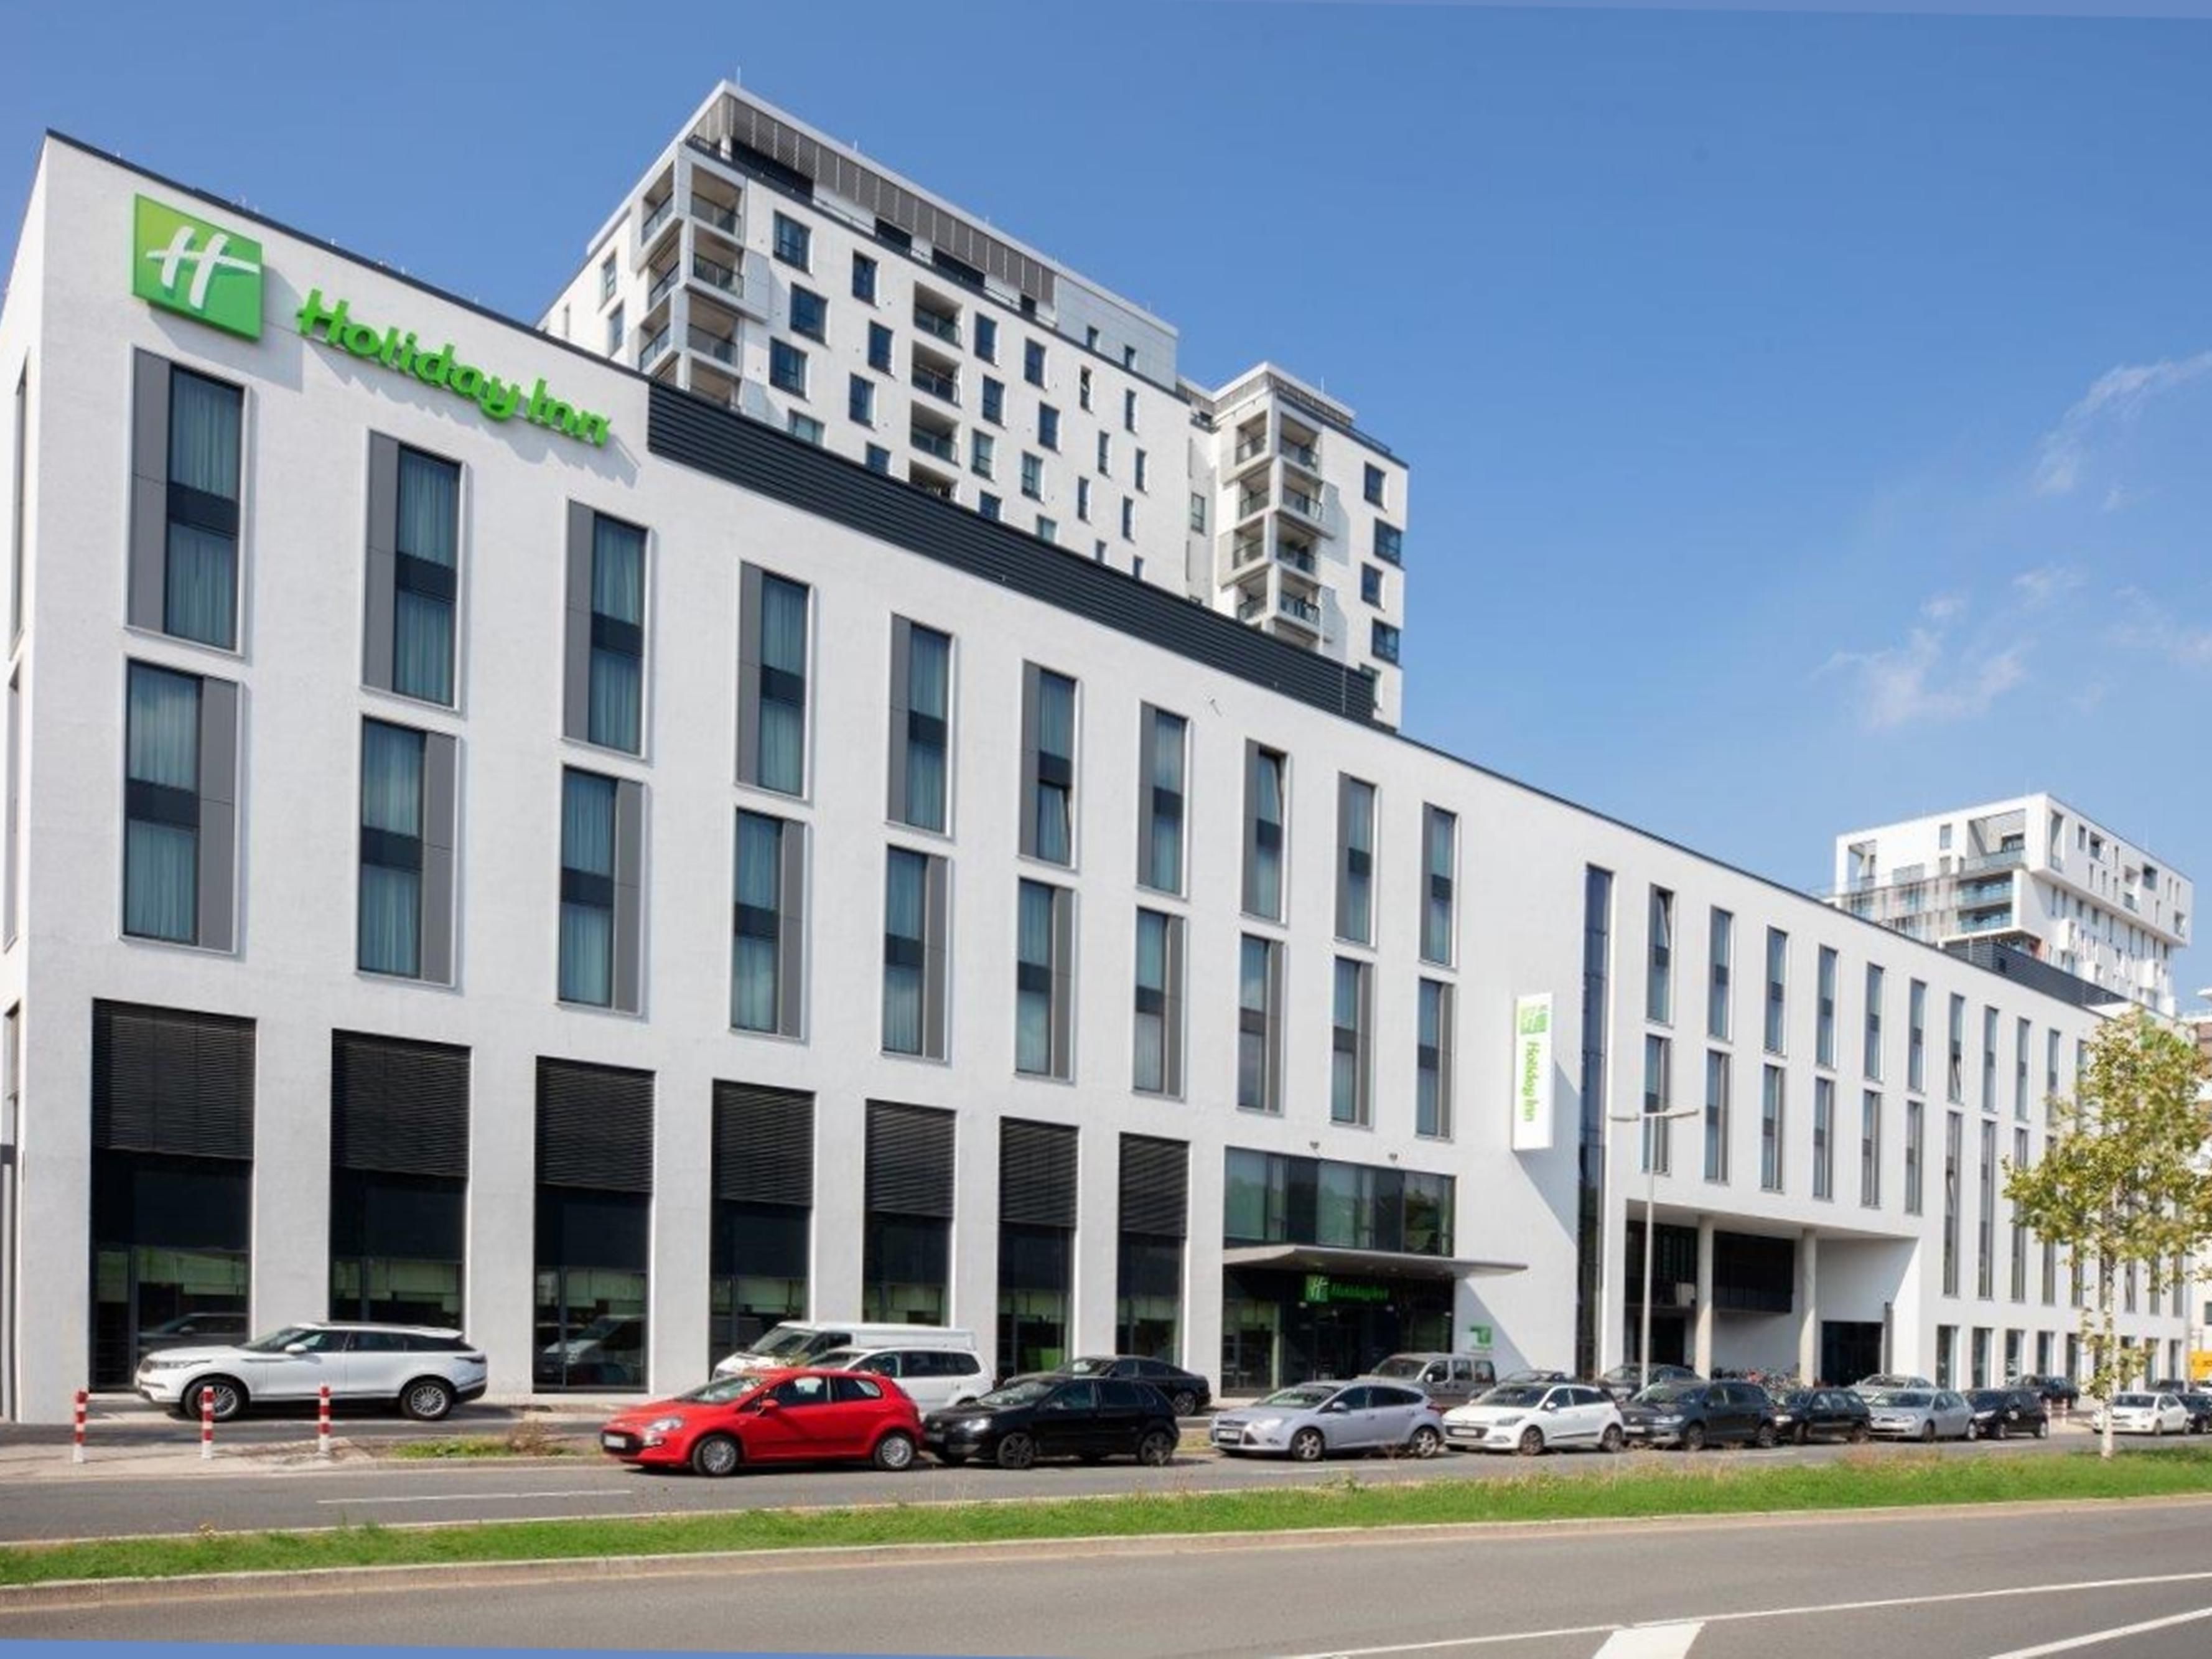 Dusseldorf Hotels Top 15 Hotels In Dusseldorf Germany By Ihg